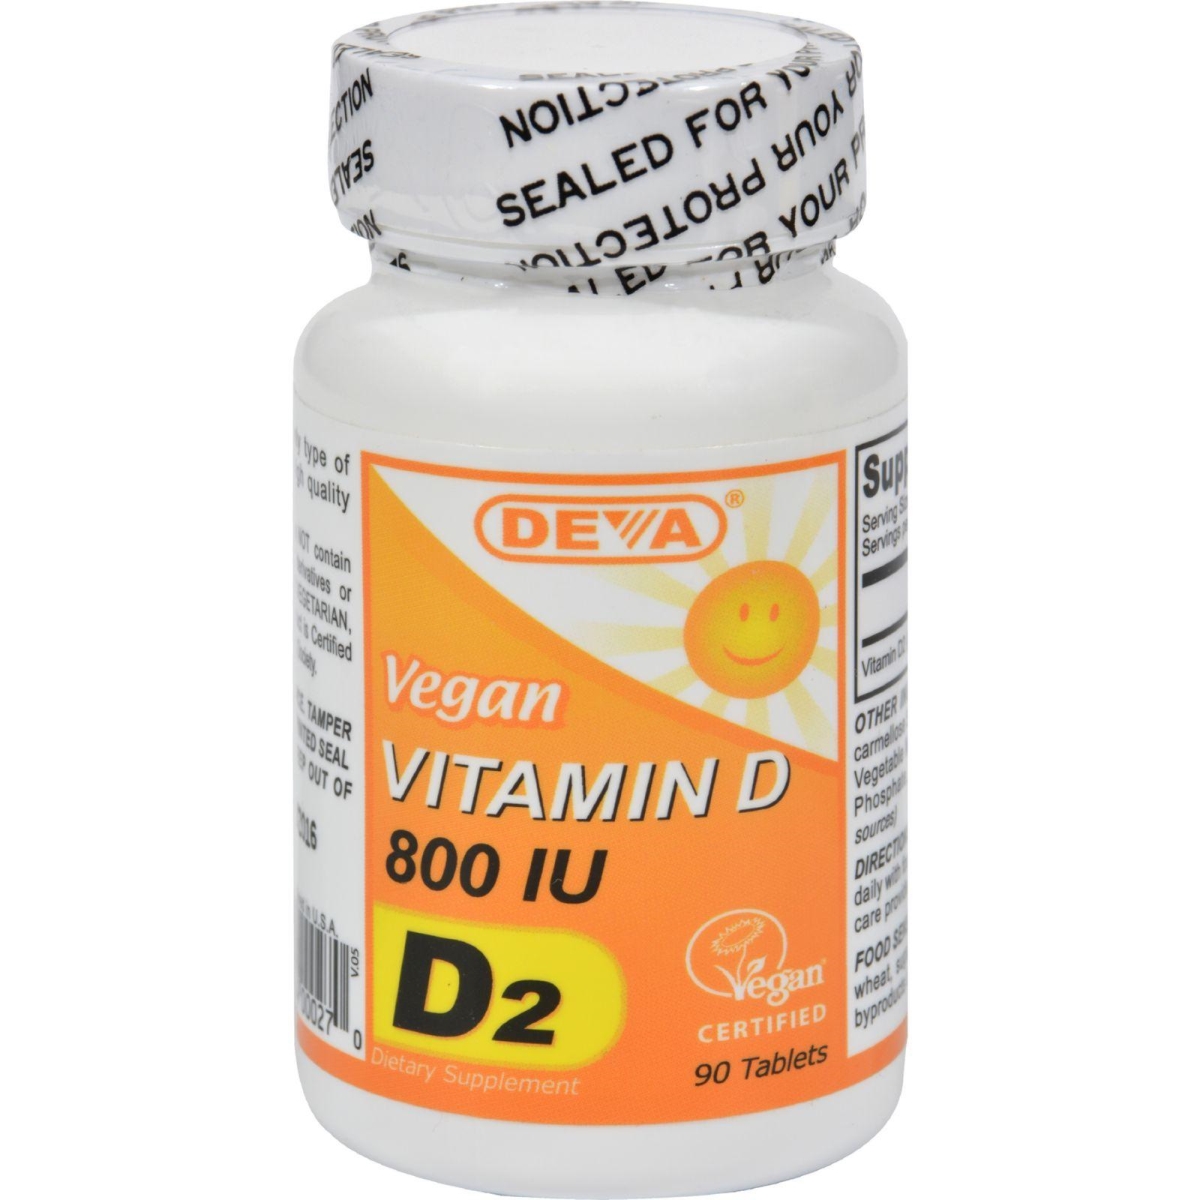 Hg0814582 Vitamin D - 800 Iu, 90 Tablets